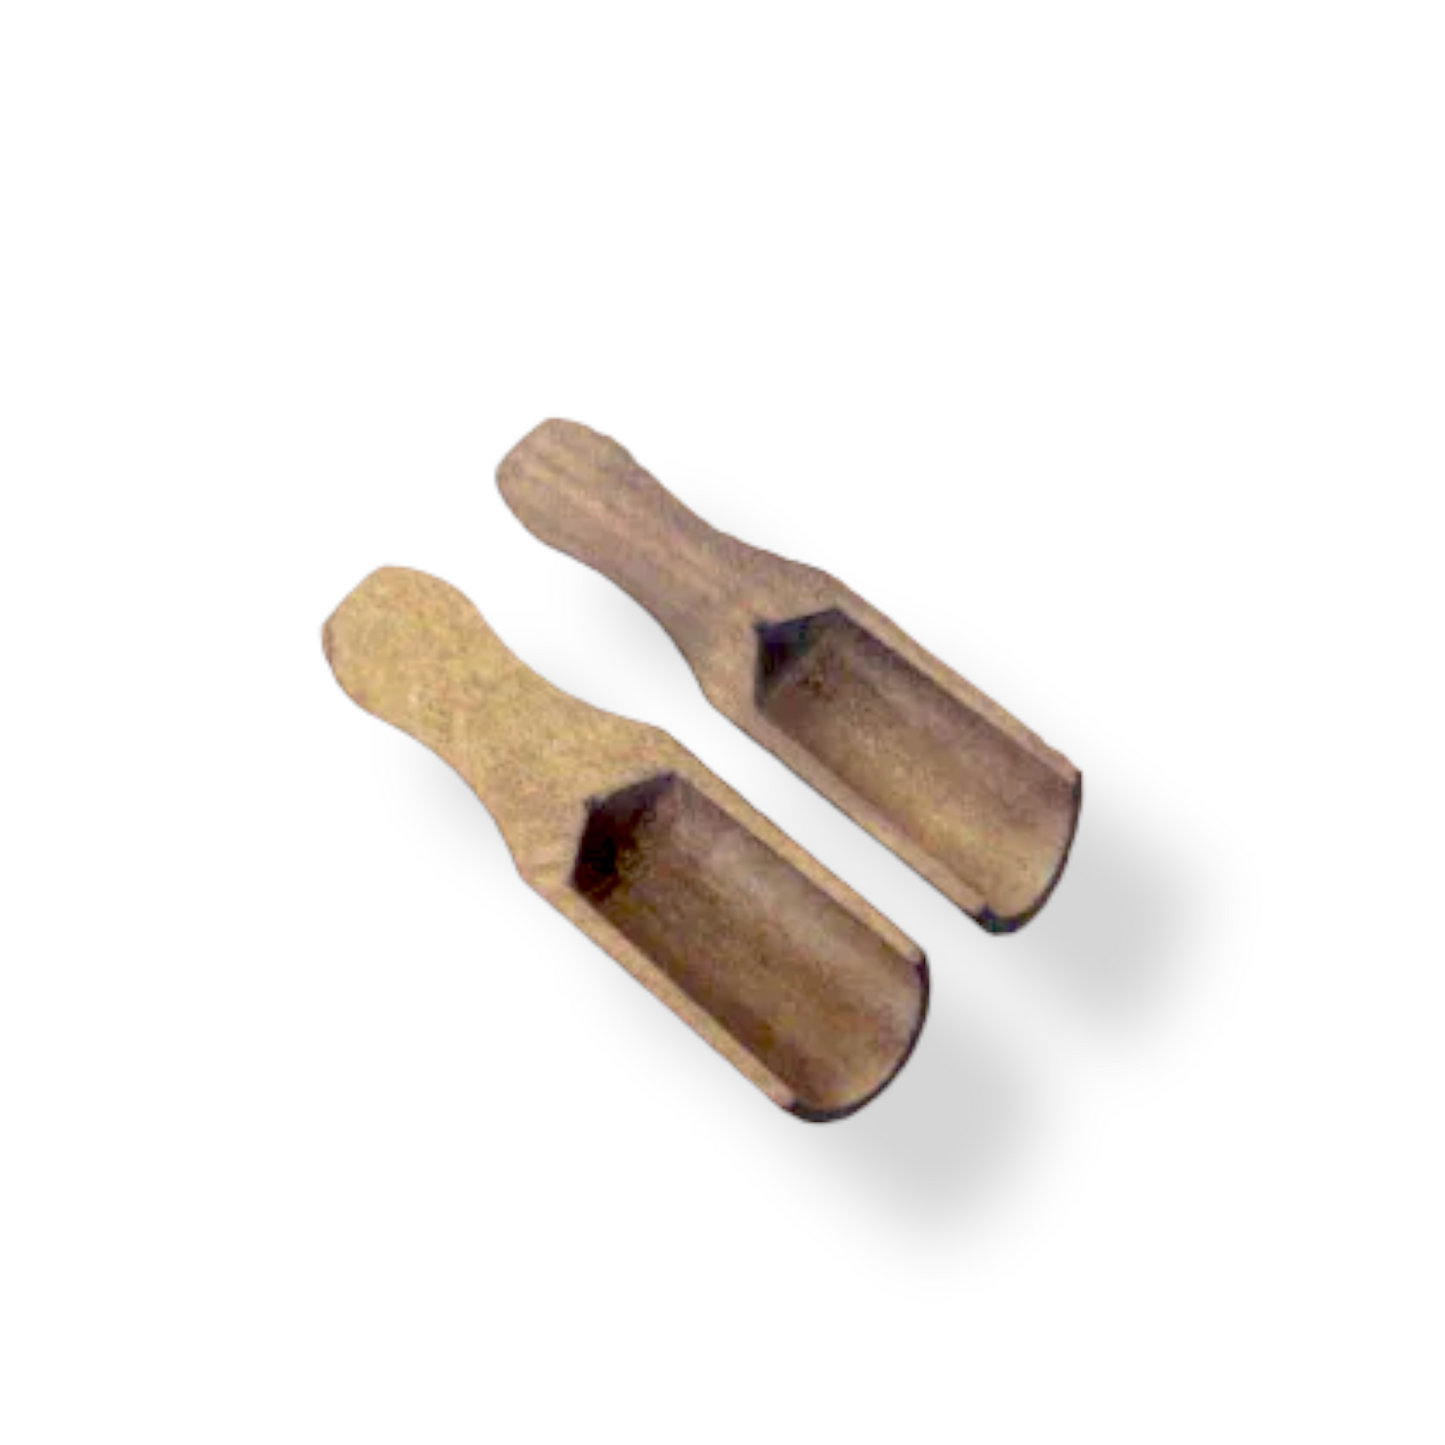 Set of 2 Small Wooden Shovels for Spice - Lunaz Shop